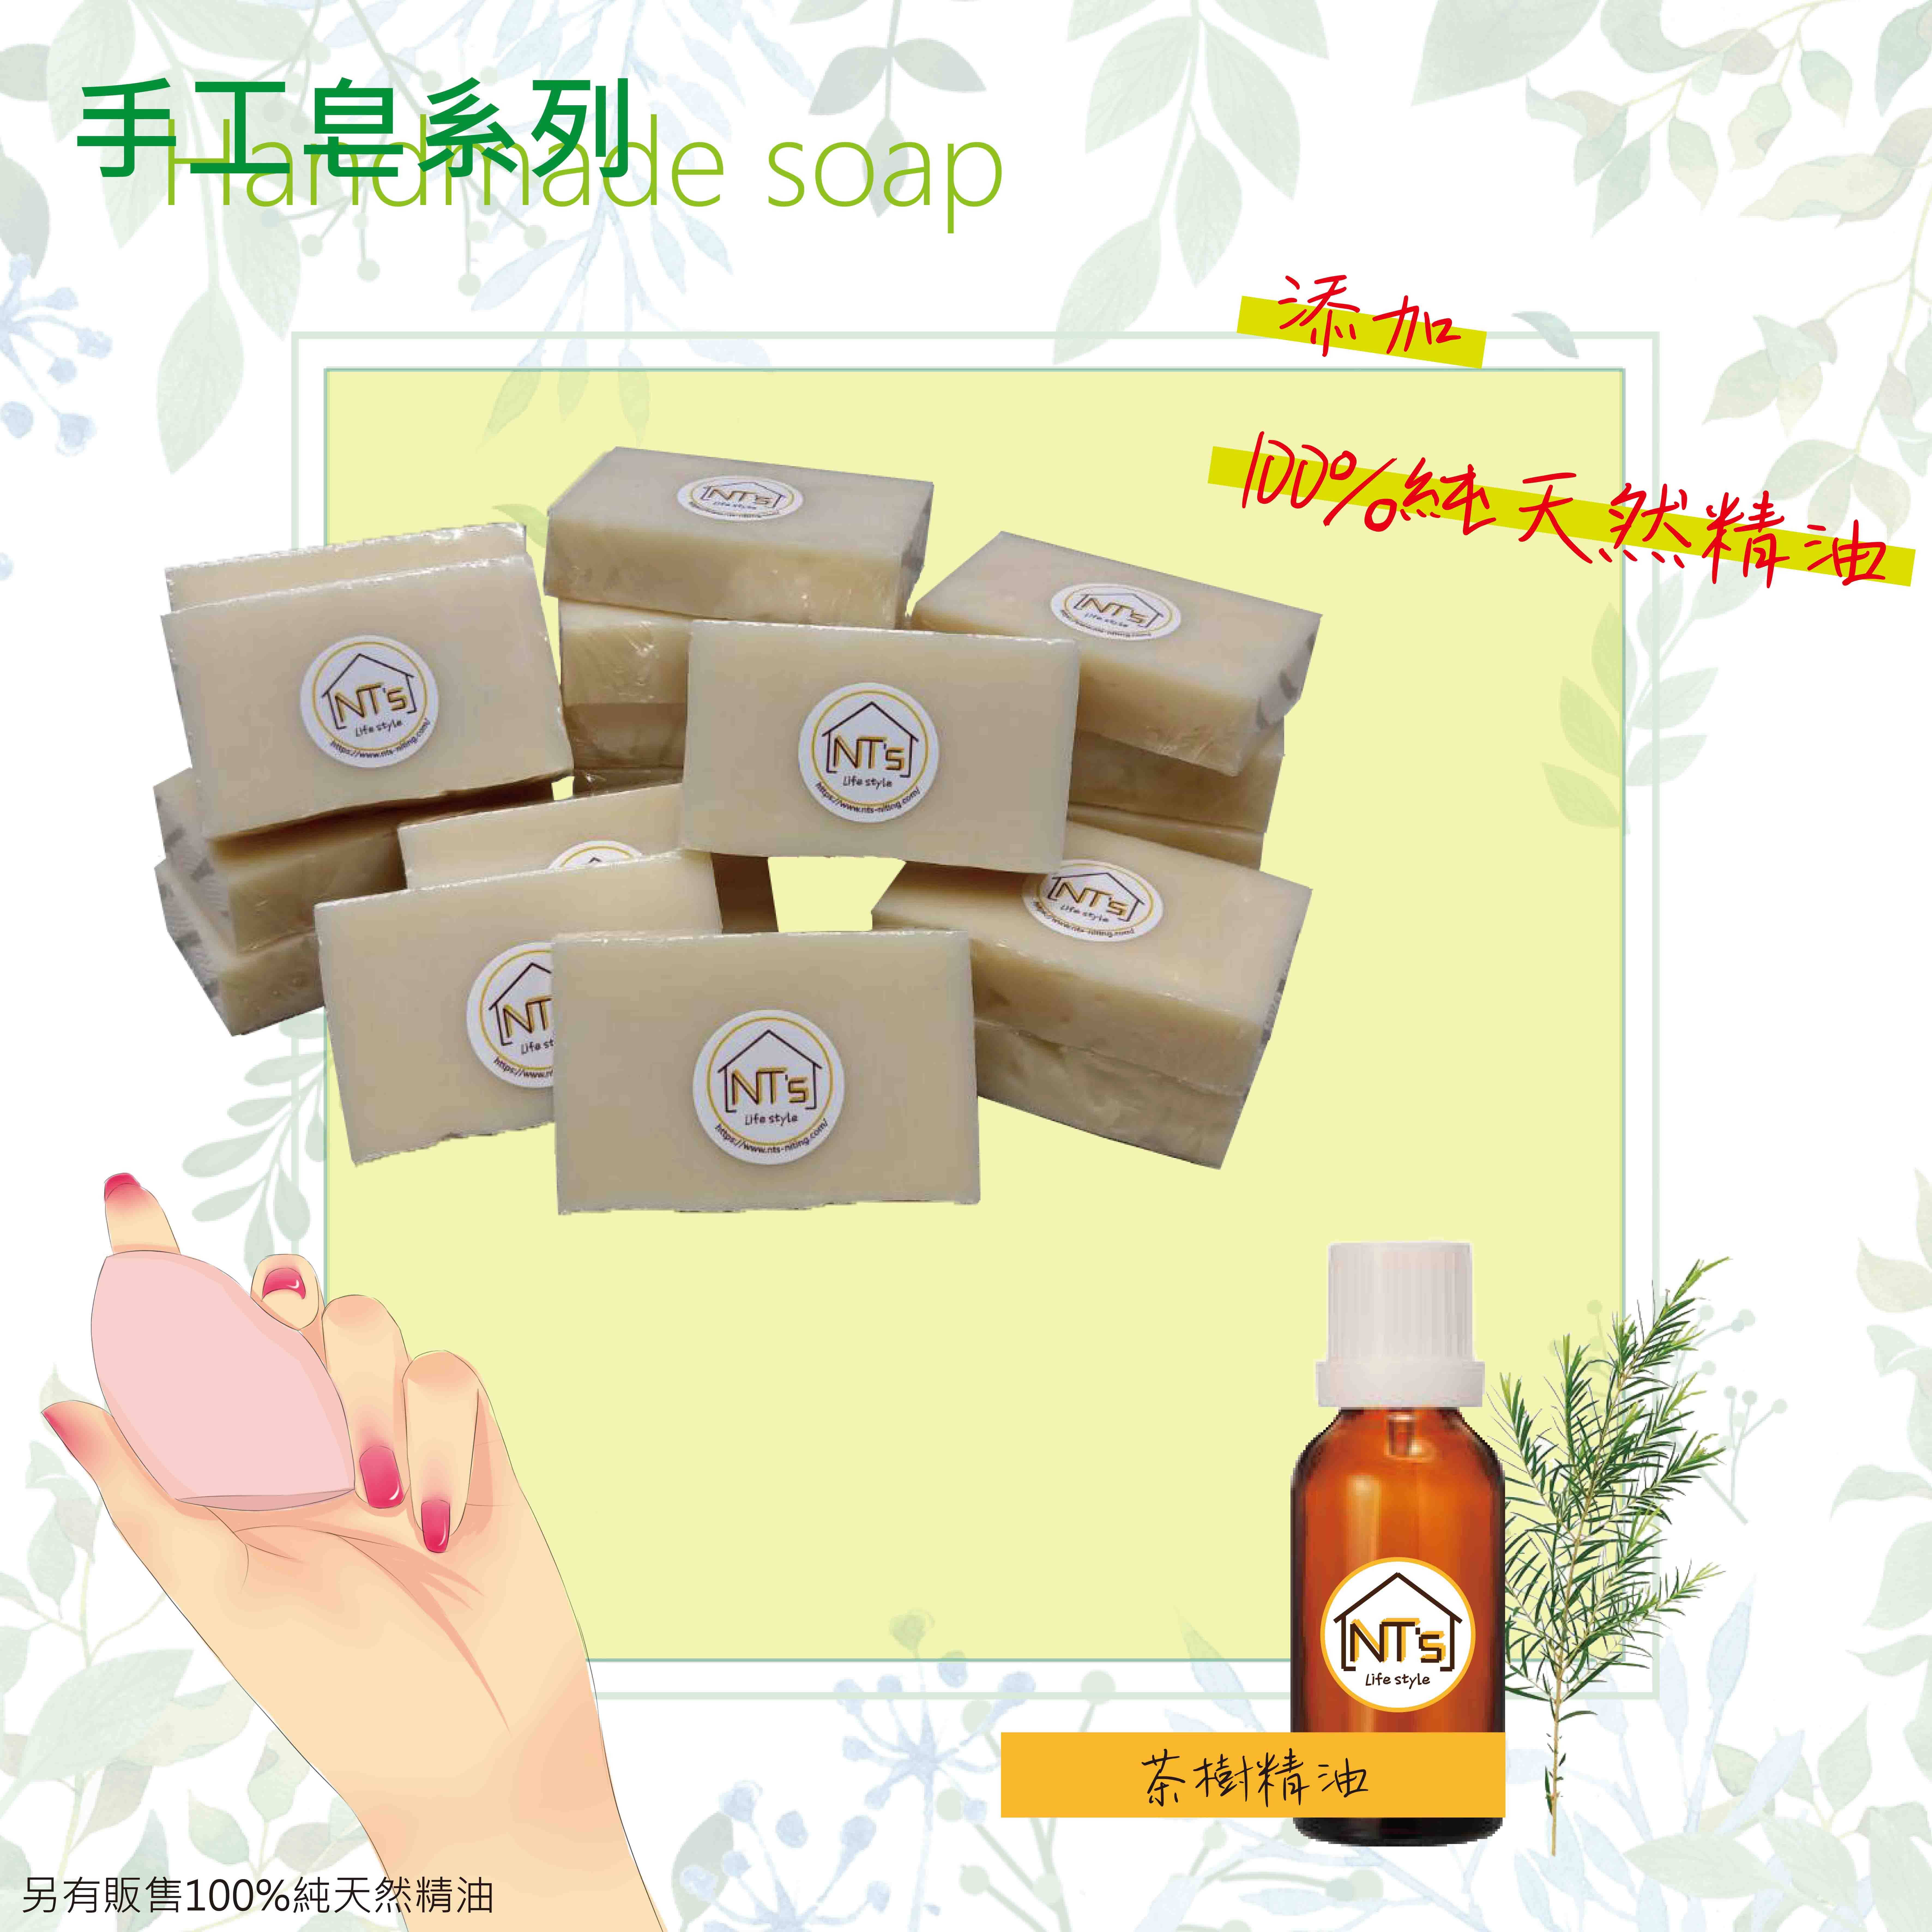 茶樹家事皂(手工皂) Handmade soap